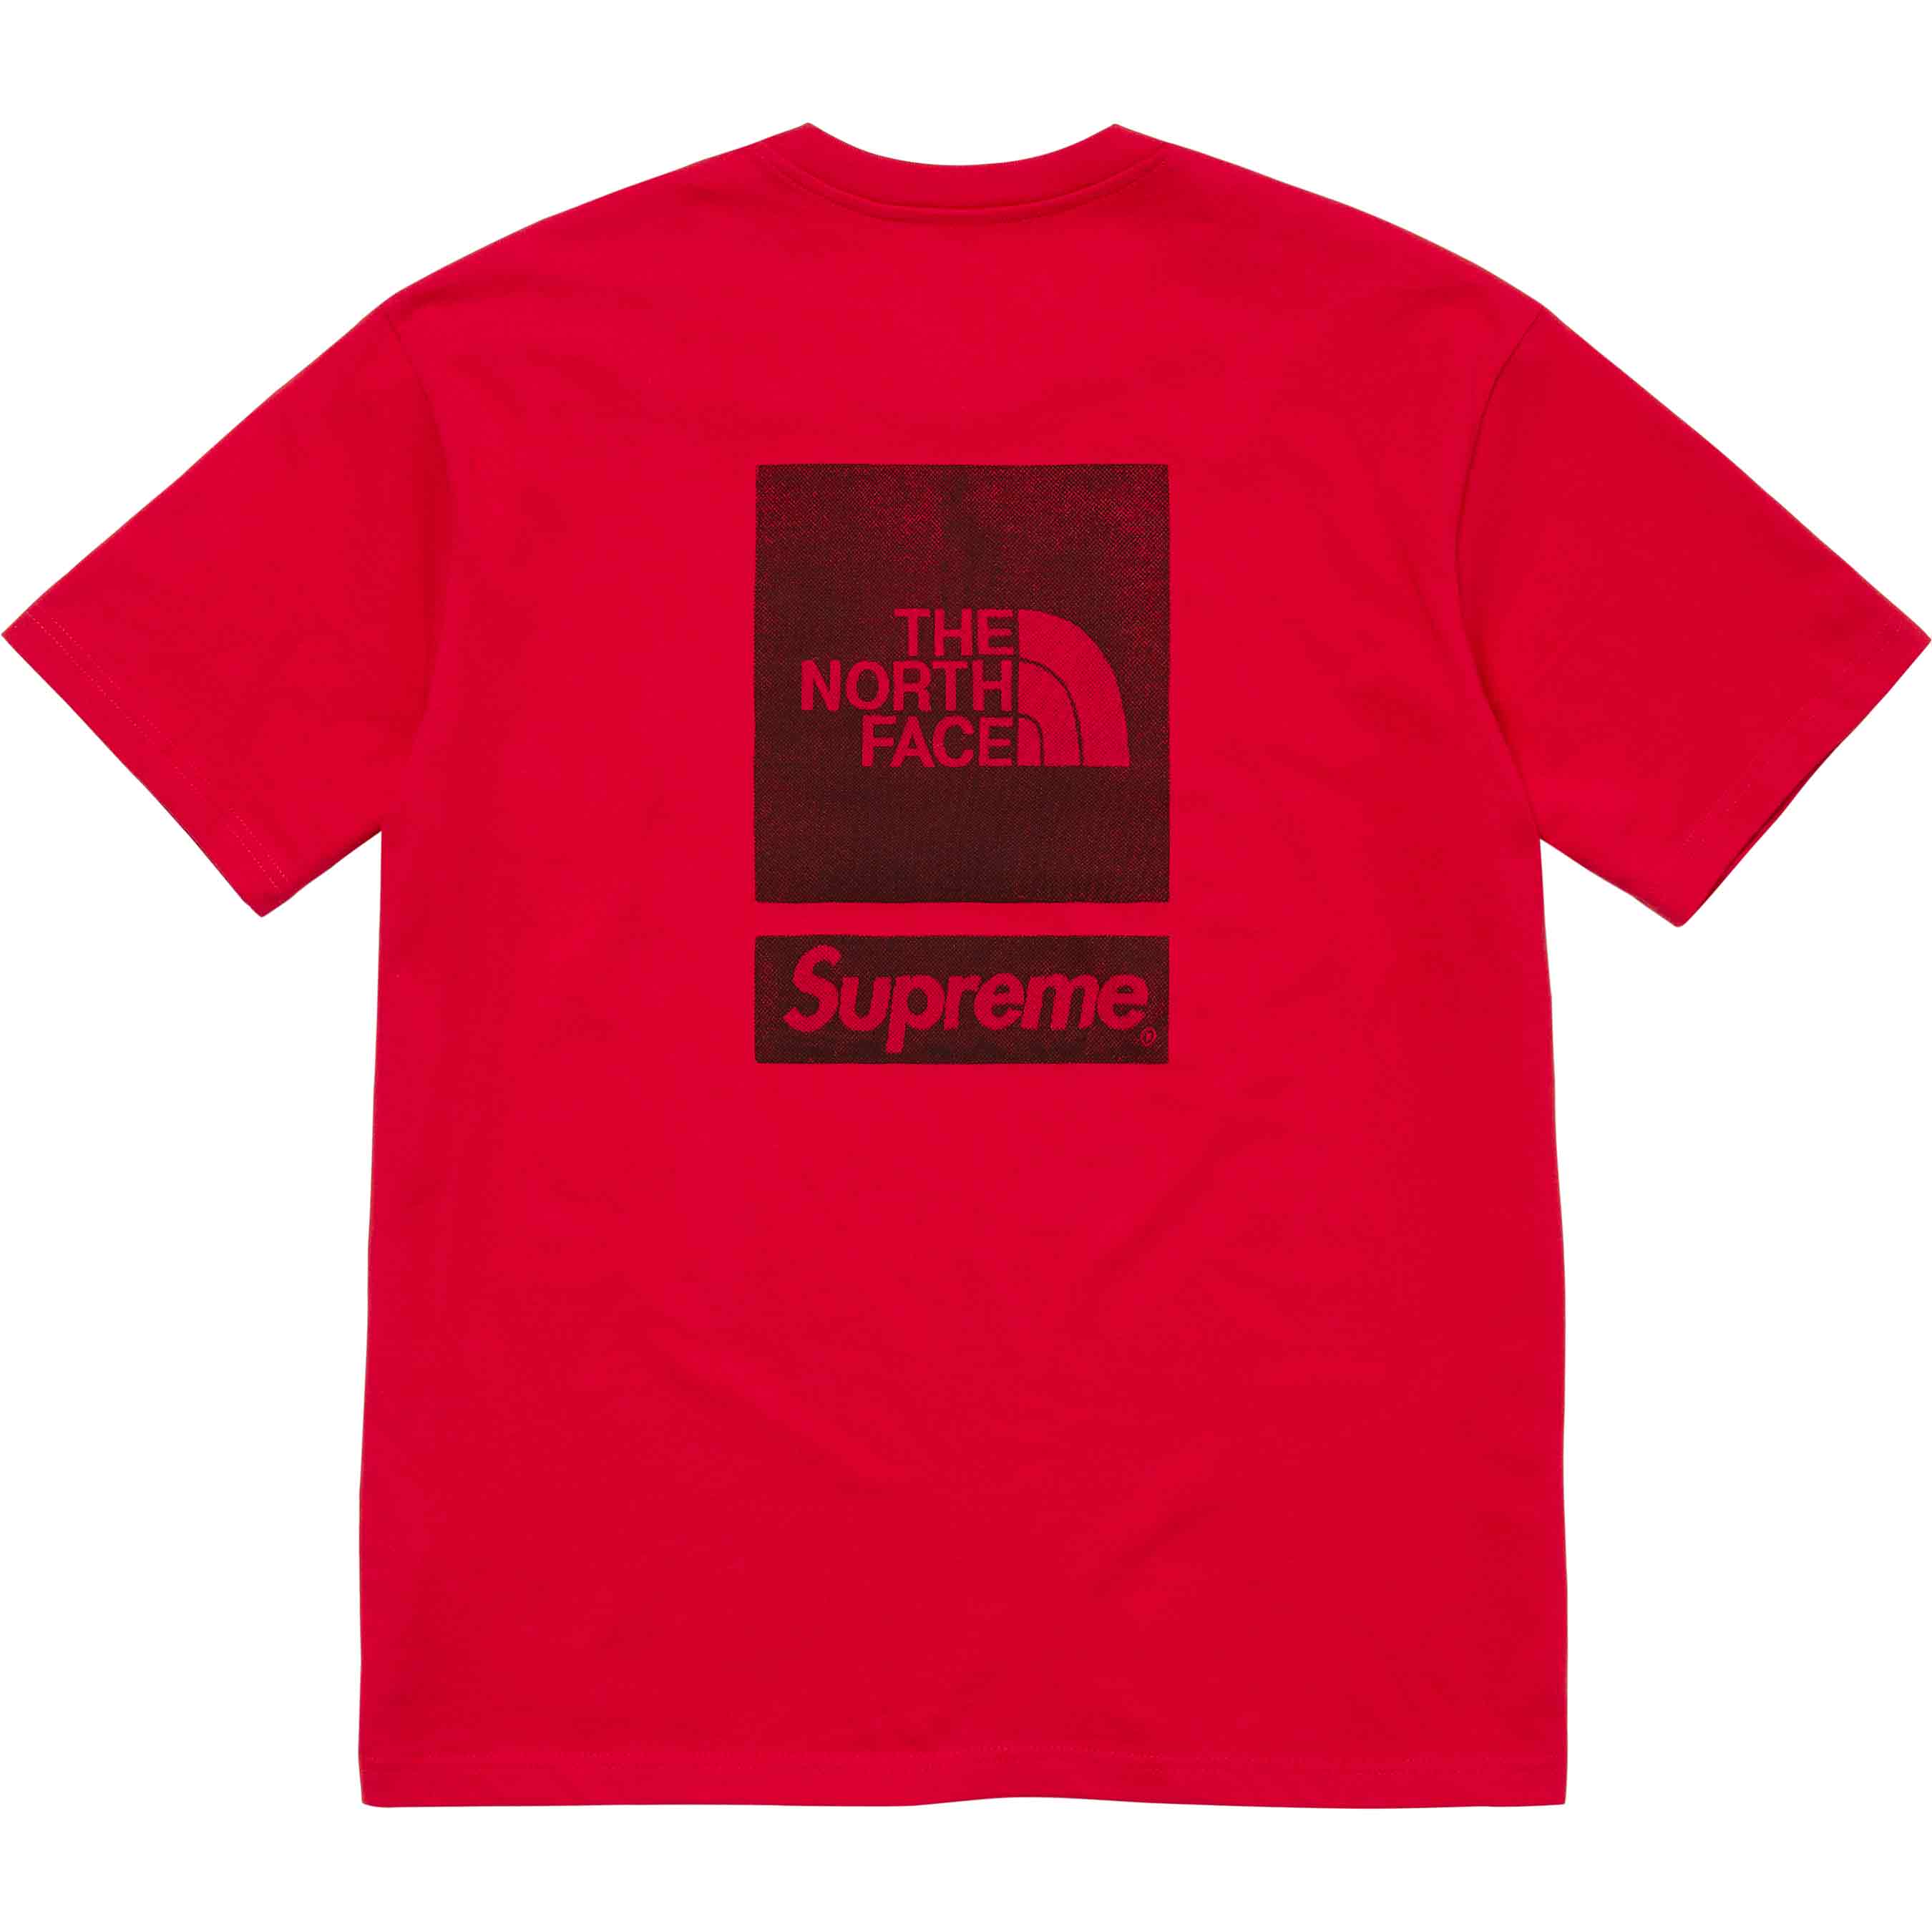 Supreme®/The North Face® S/S Top - Shop - Supreme